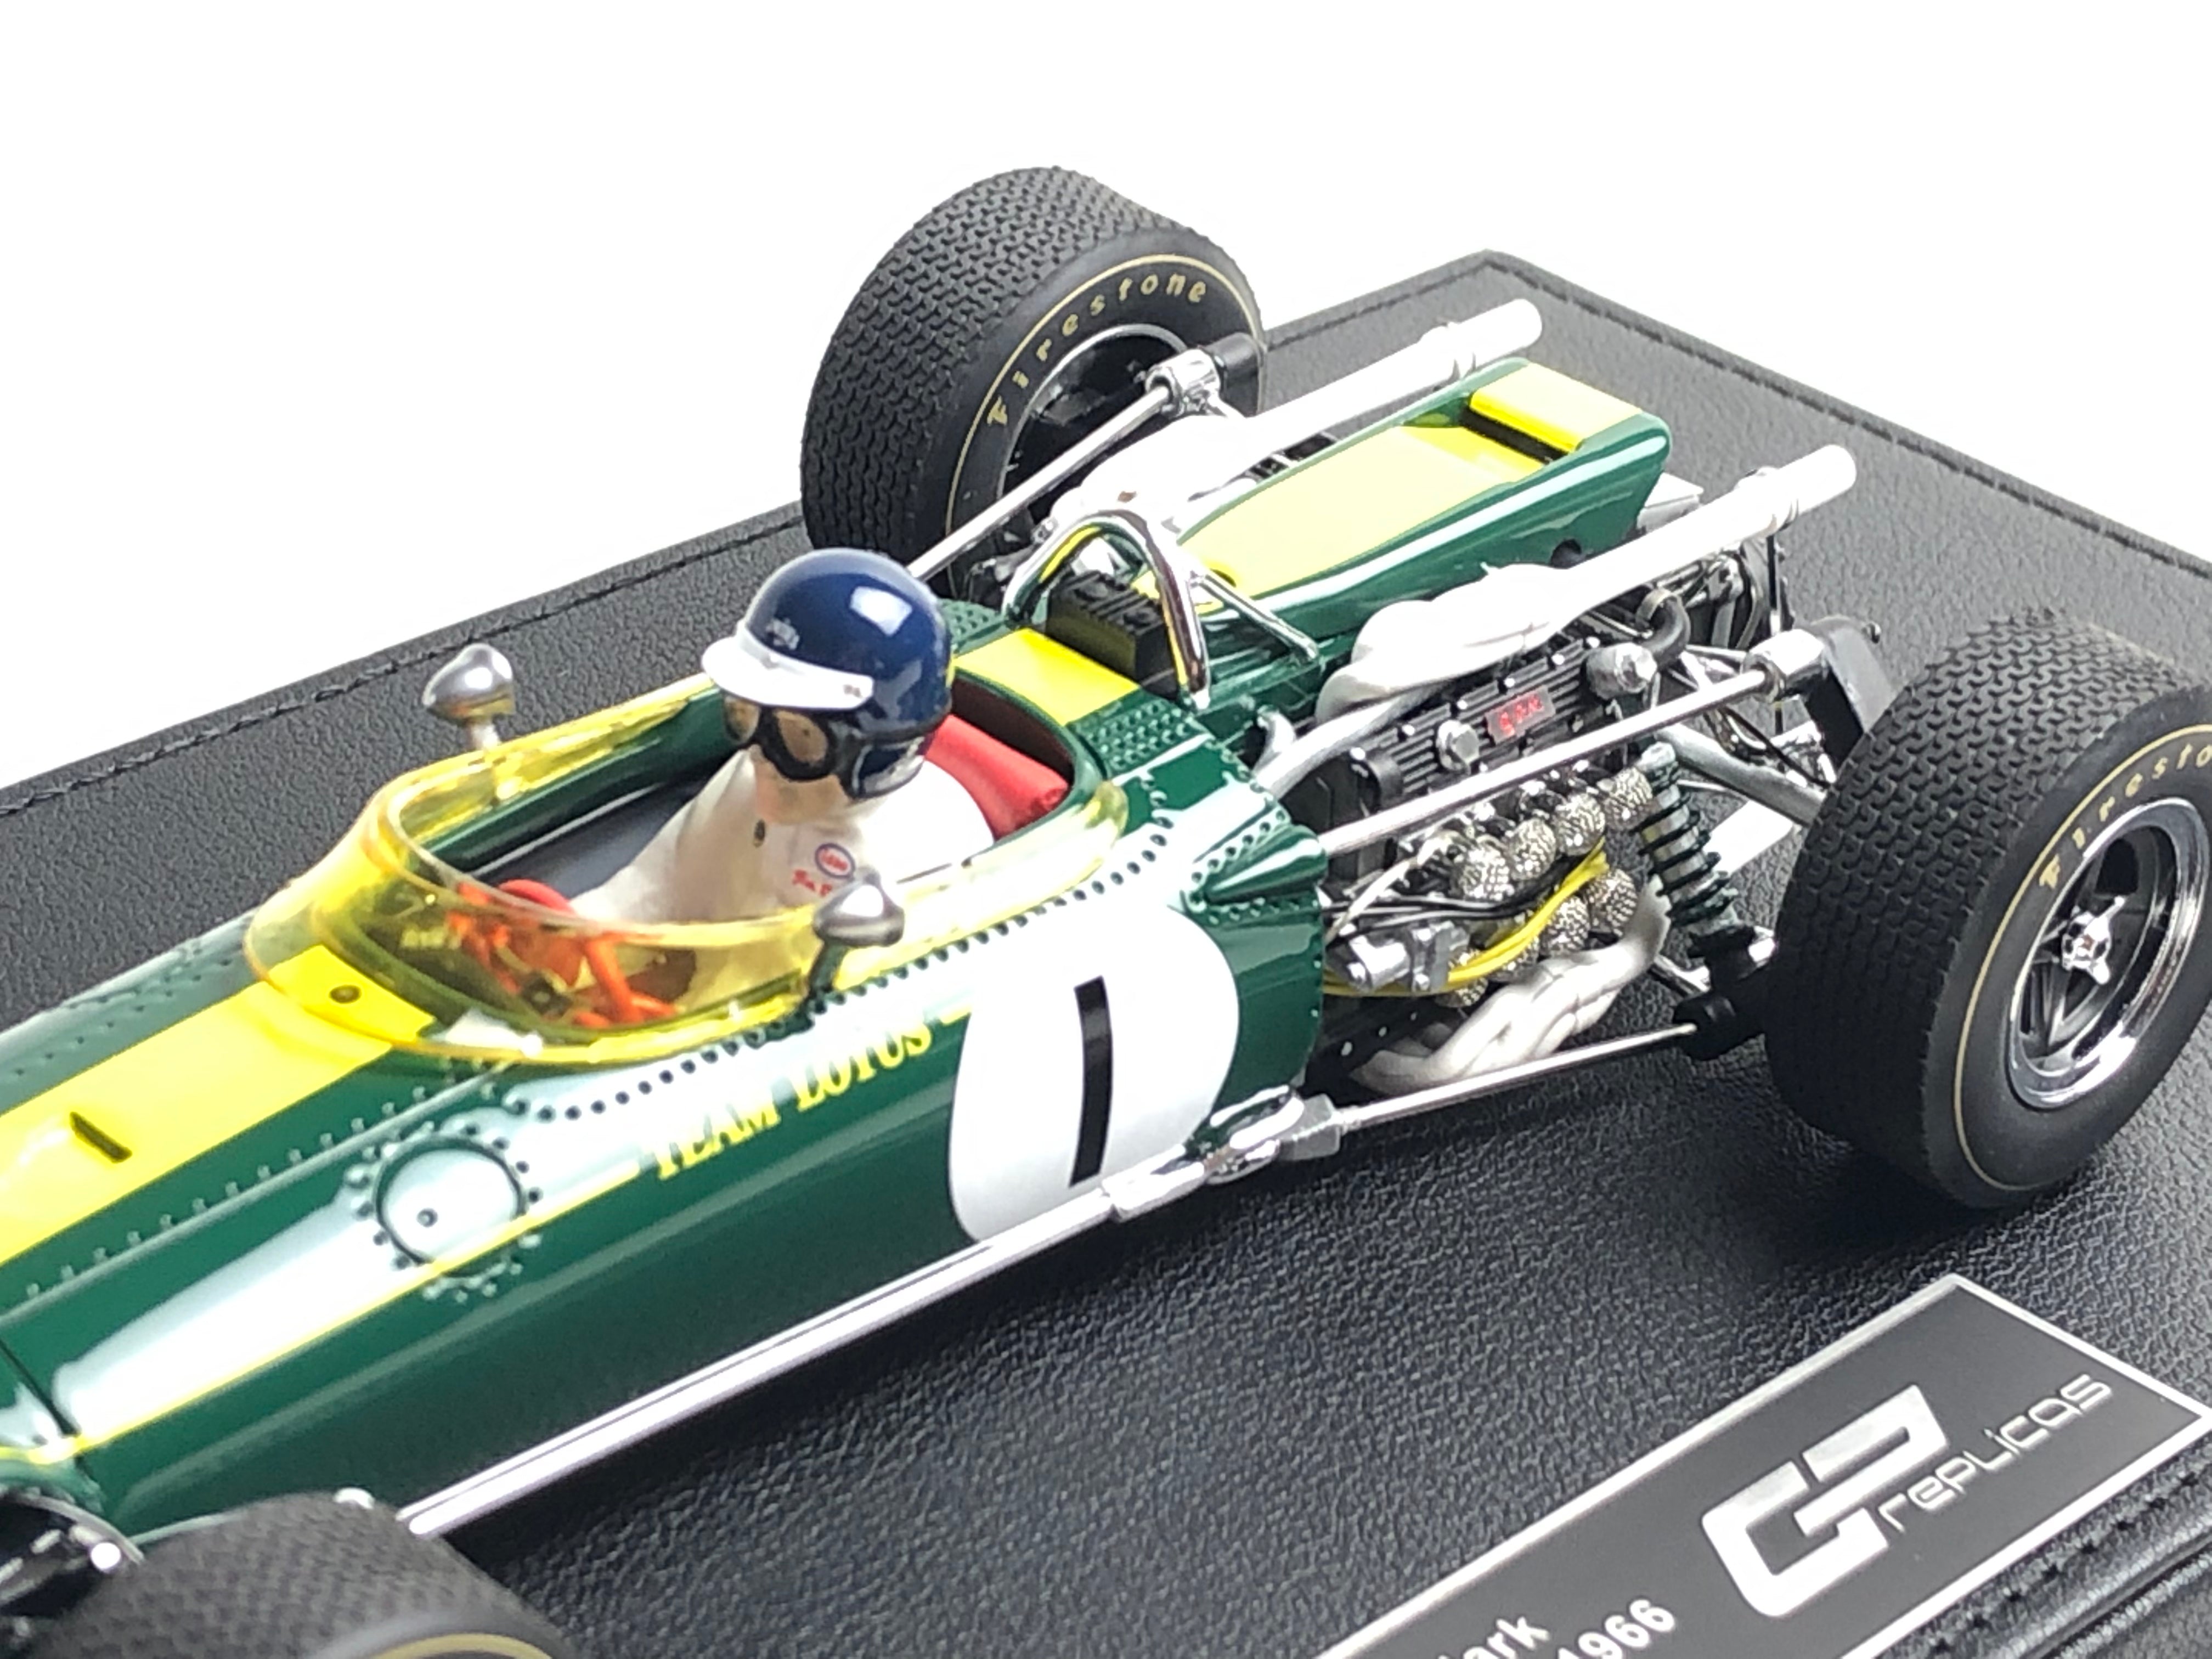 1:18 scale Lotus 43 Jim Clark #1 1966 US Grand Prix winner